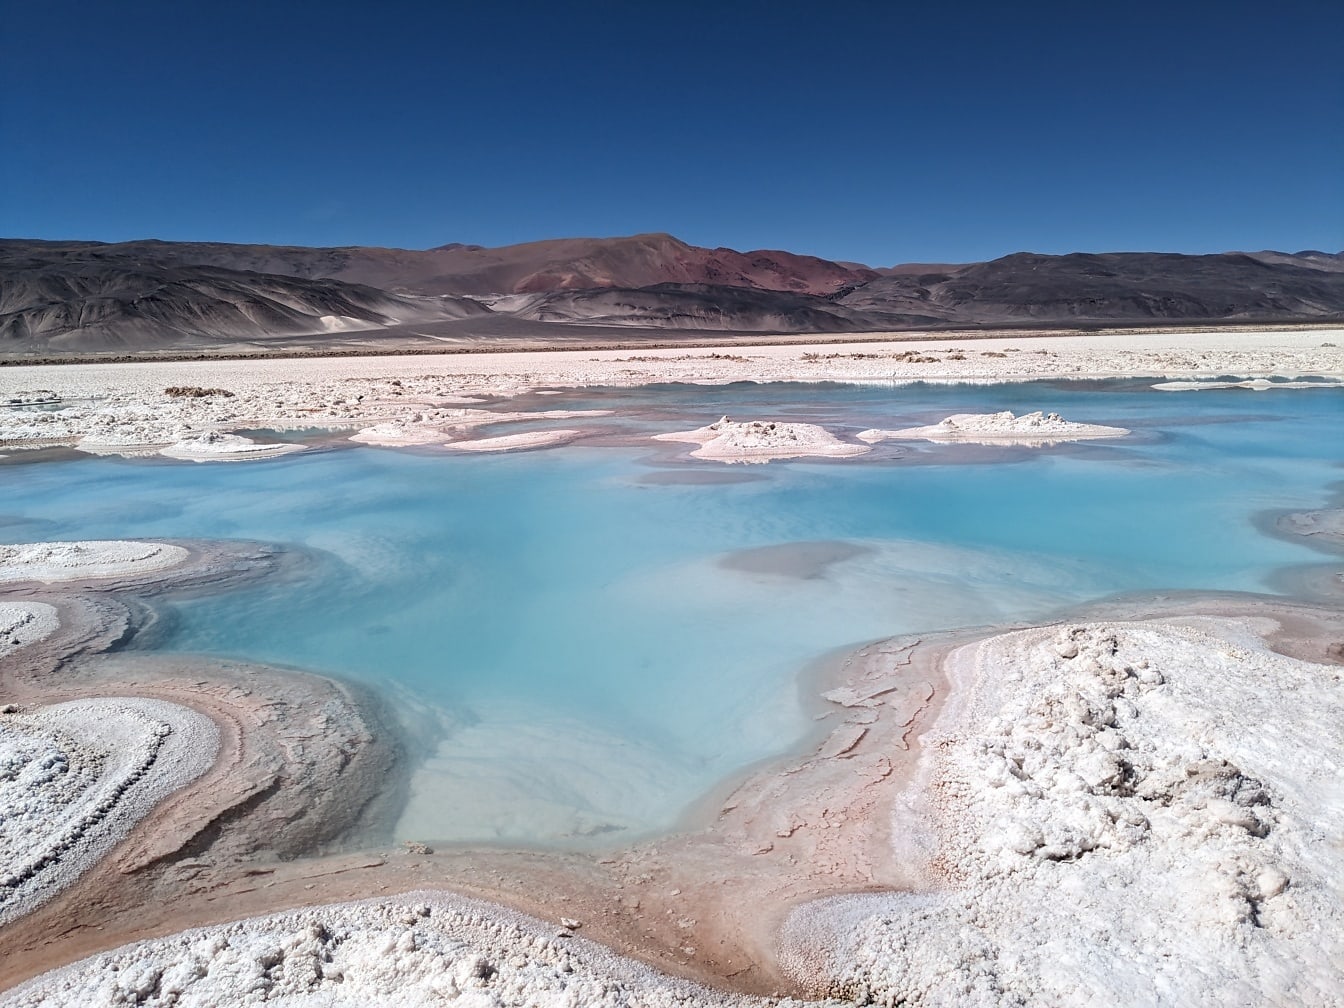 Colore azzurro dell’acqua salata in un lago salato sull’altopiano del deserto a La Puna in Argentina